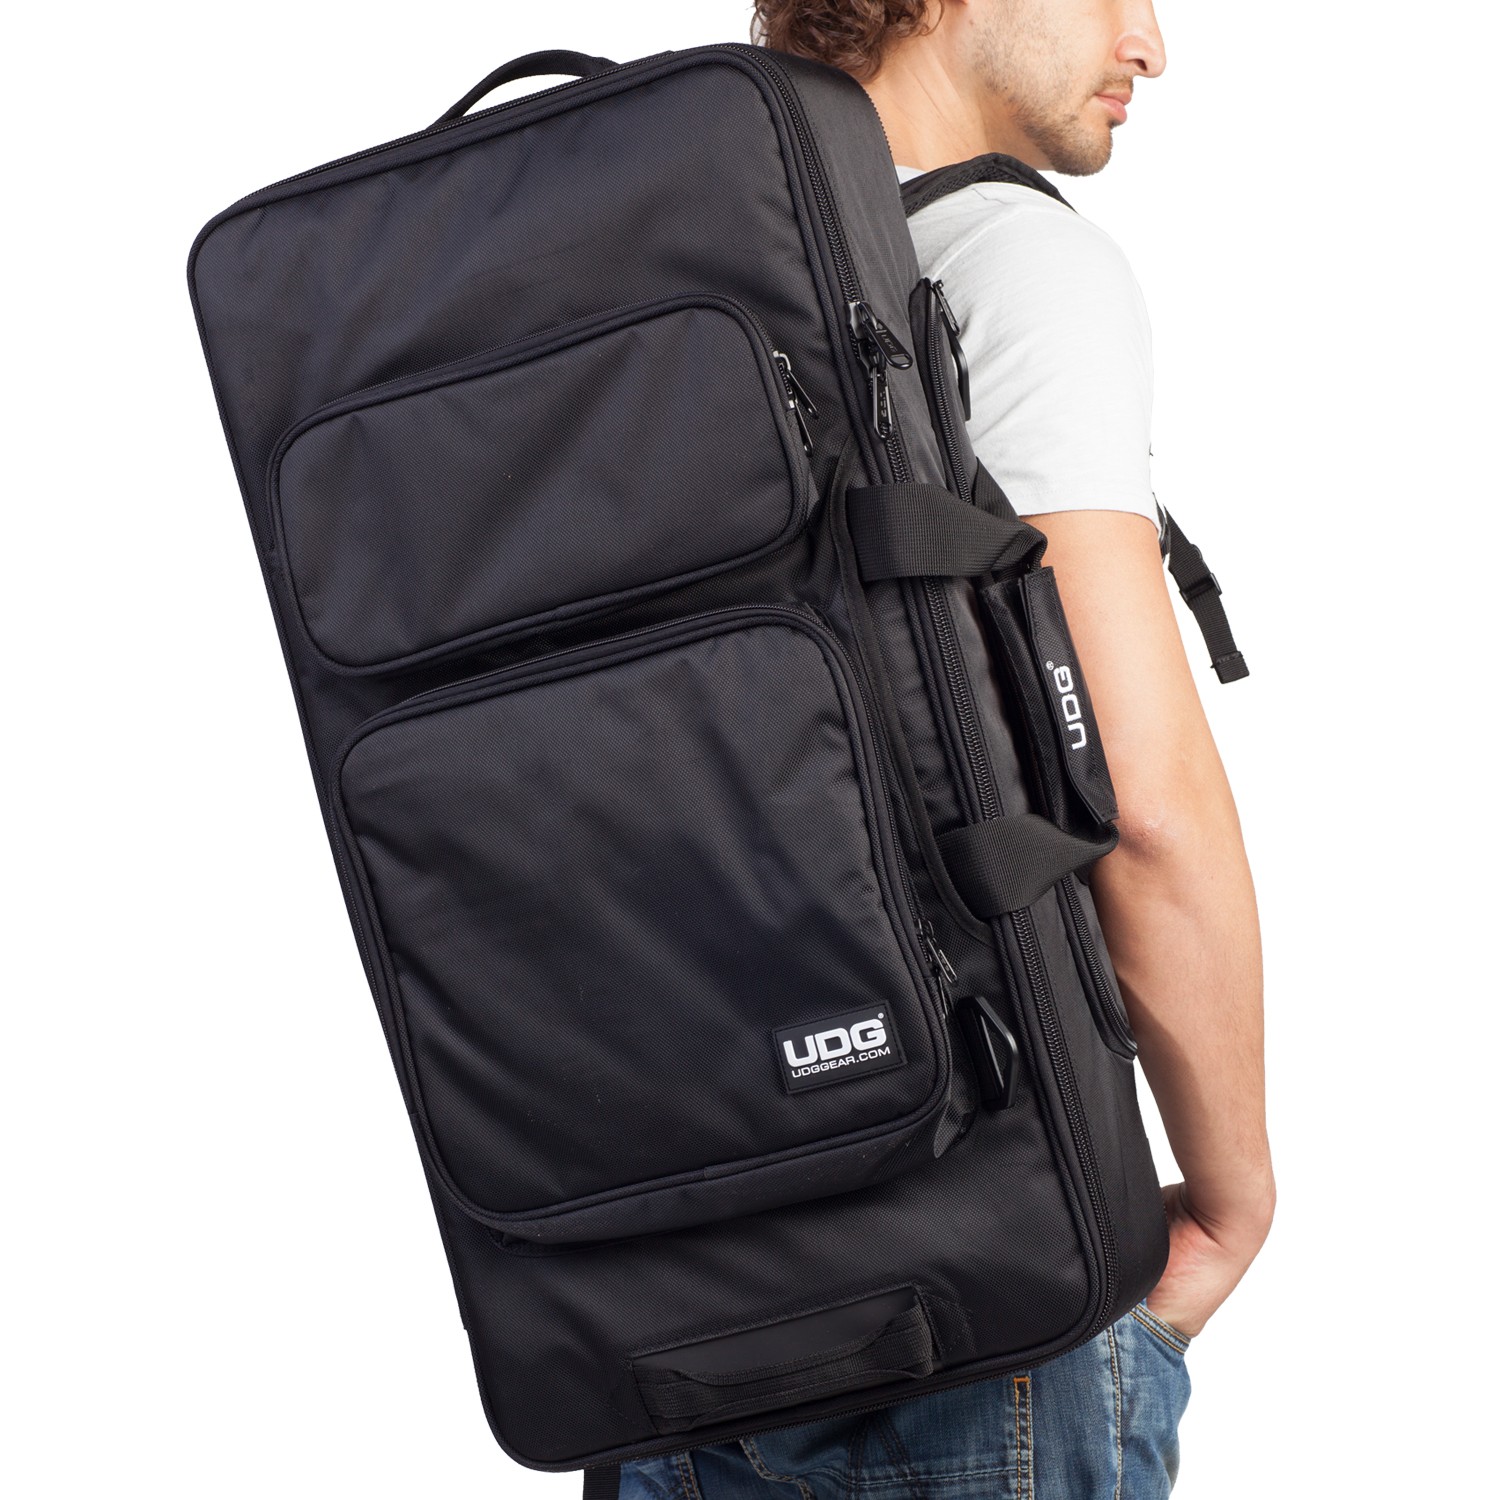 Udg Ultimate Midi Controller Backpack Large Black/orange Inside Mk2 - Trolley DJ - Variation 3